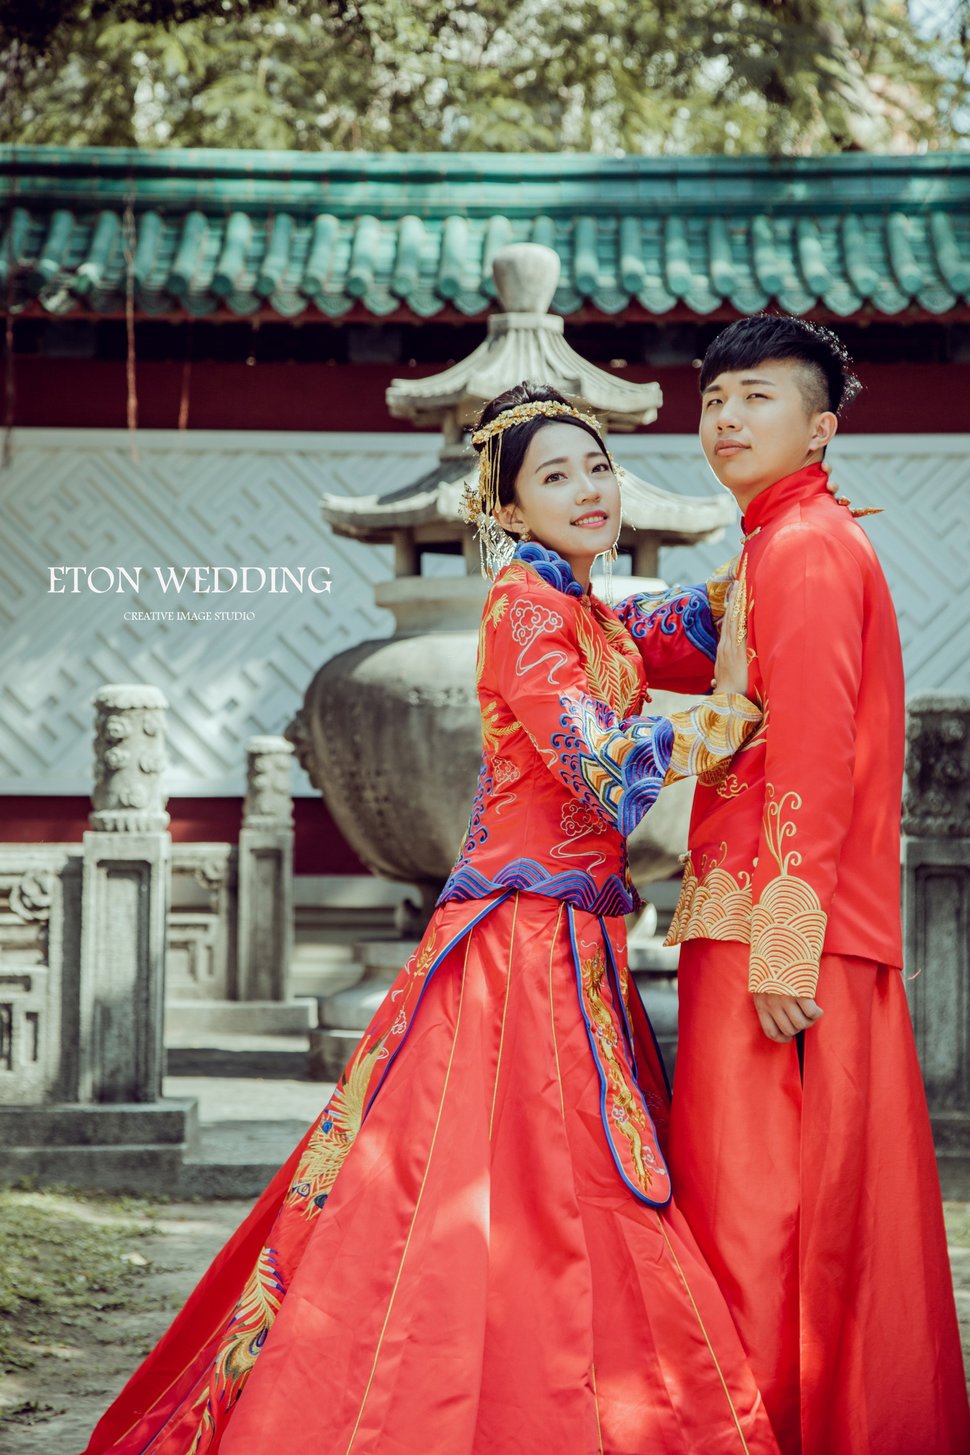 中式婚紗,伊頓自助婚紗 (3) - 伊頓自助婚紗攝影工作室《結婚吧》